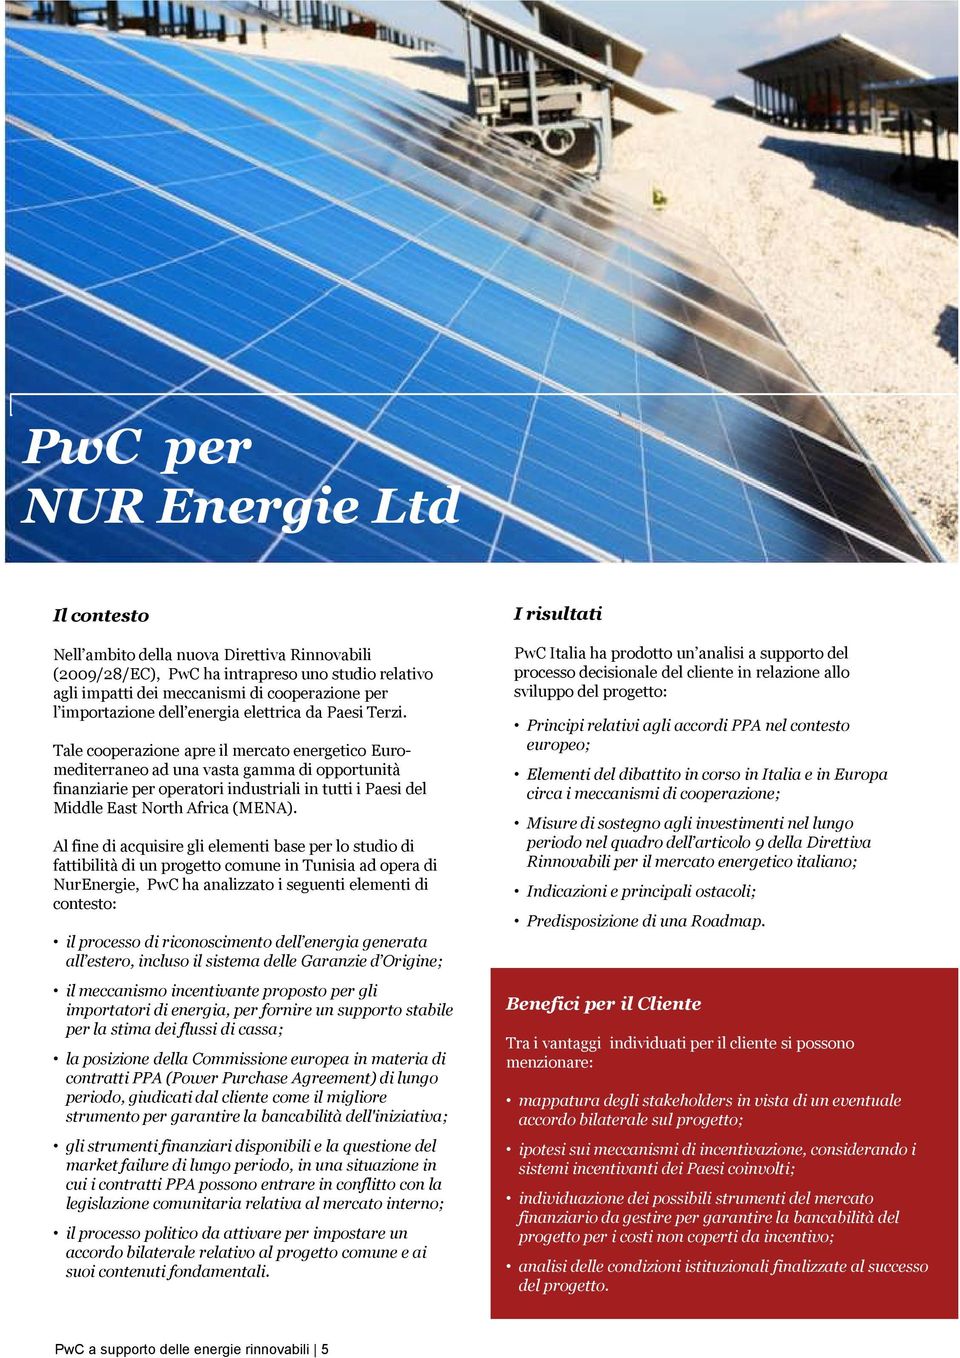 PwC Italia ha prodotto un analisi a supporto del processo decisionale del cliente in relazione allo sviluppo del progetto: Tale cooperazione apre il mercato energetico Euromediterraneo ad una vasta